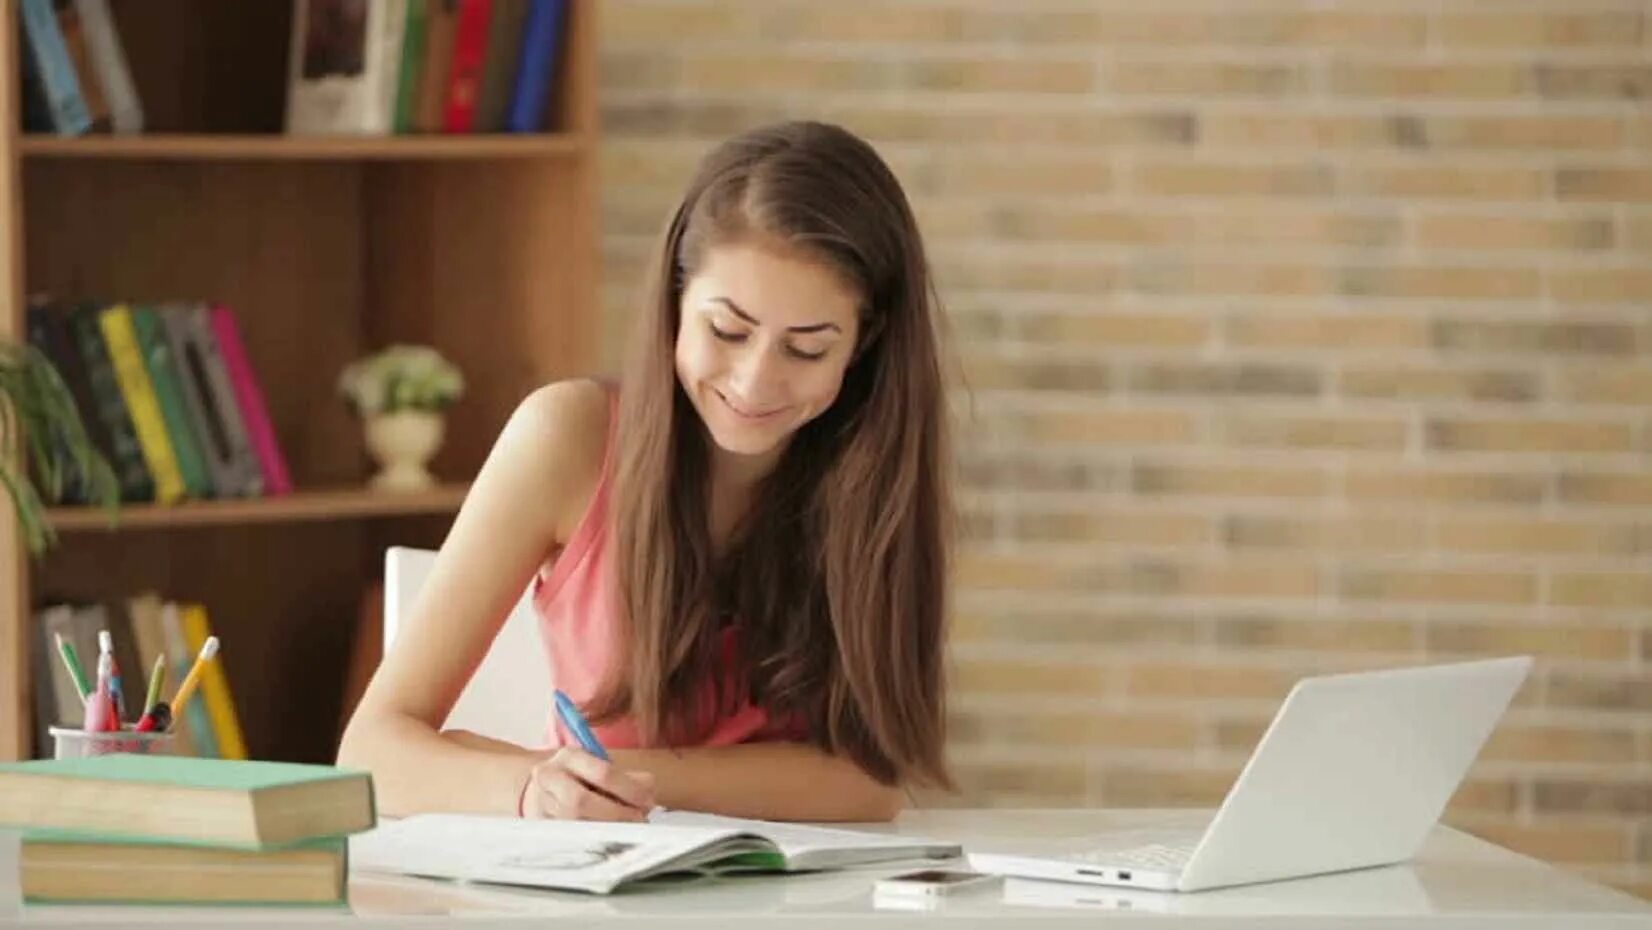 She study for her exams. Девушка в интернете. Девочка стади. Писатели студенты. Студенты дефектологи.